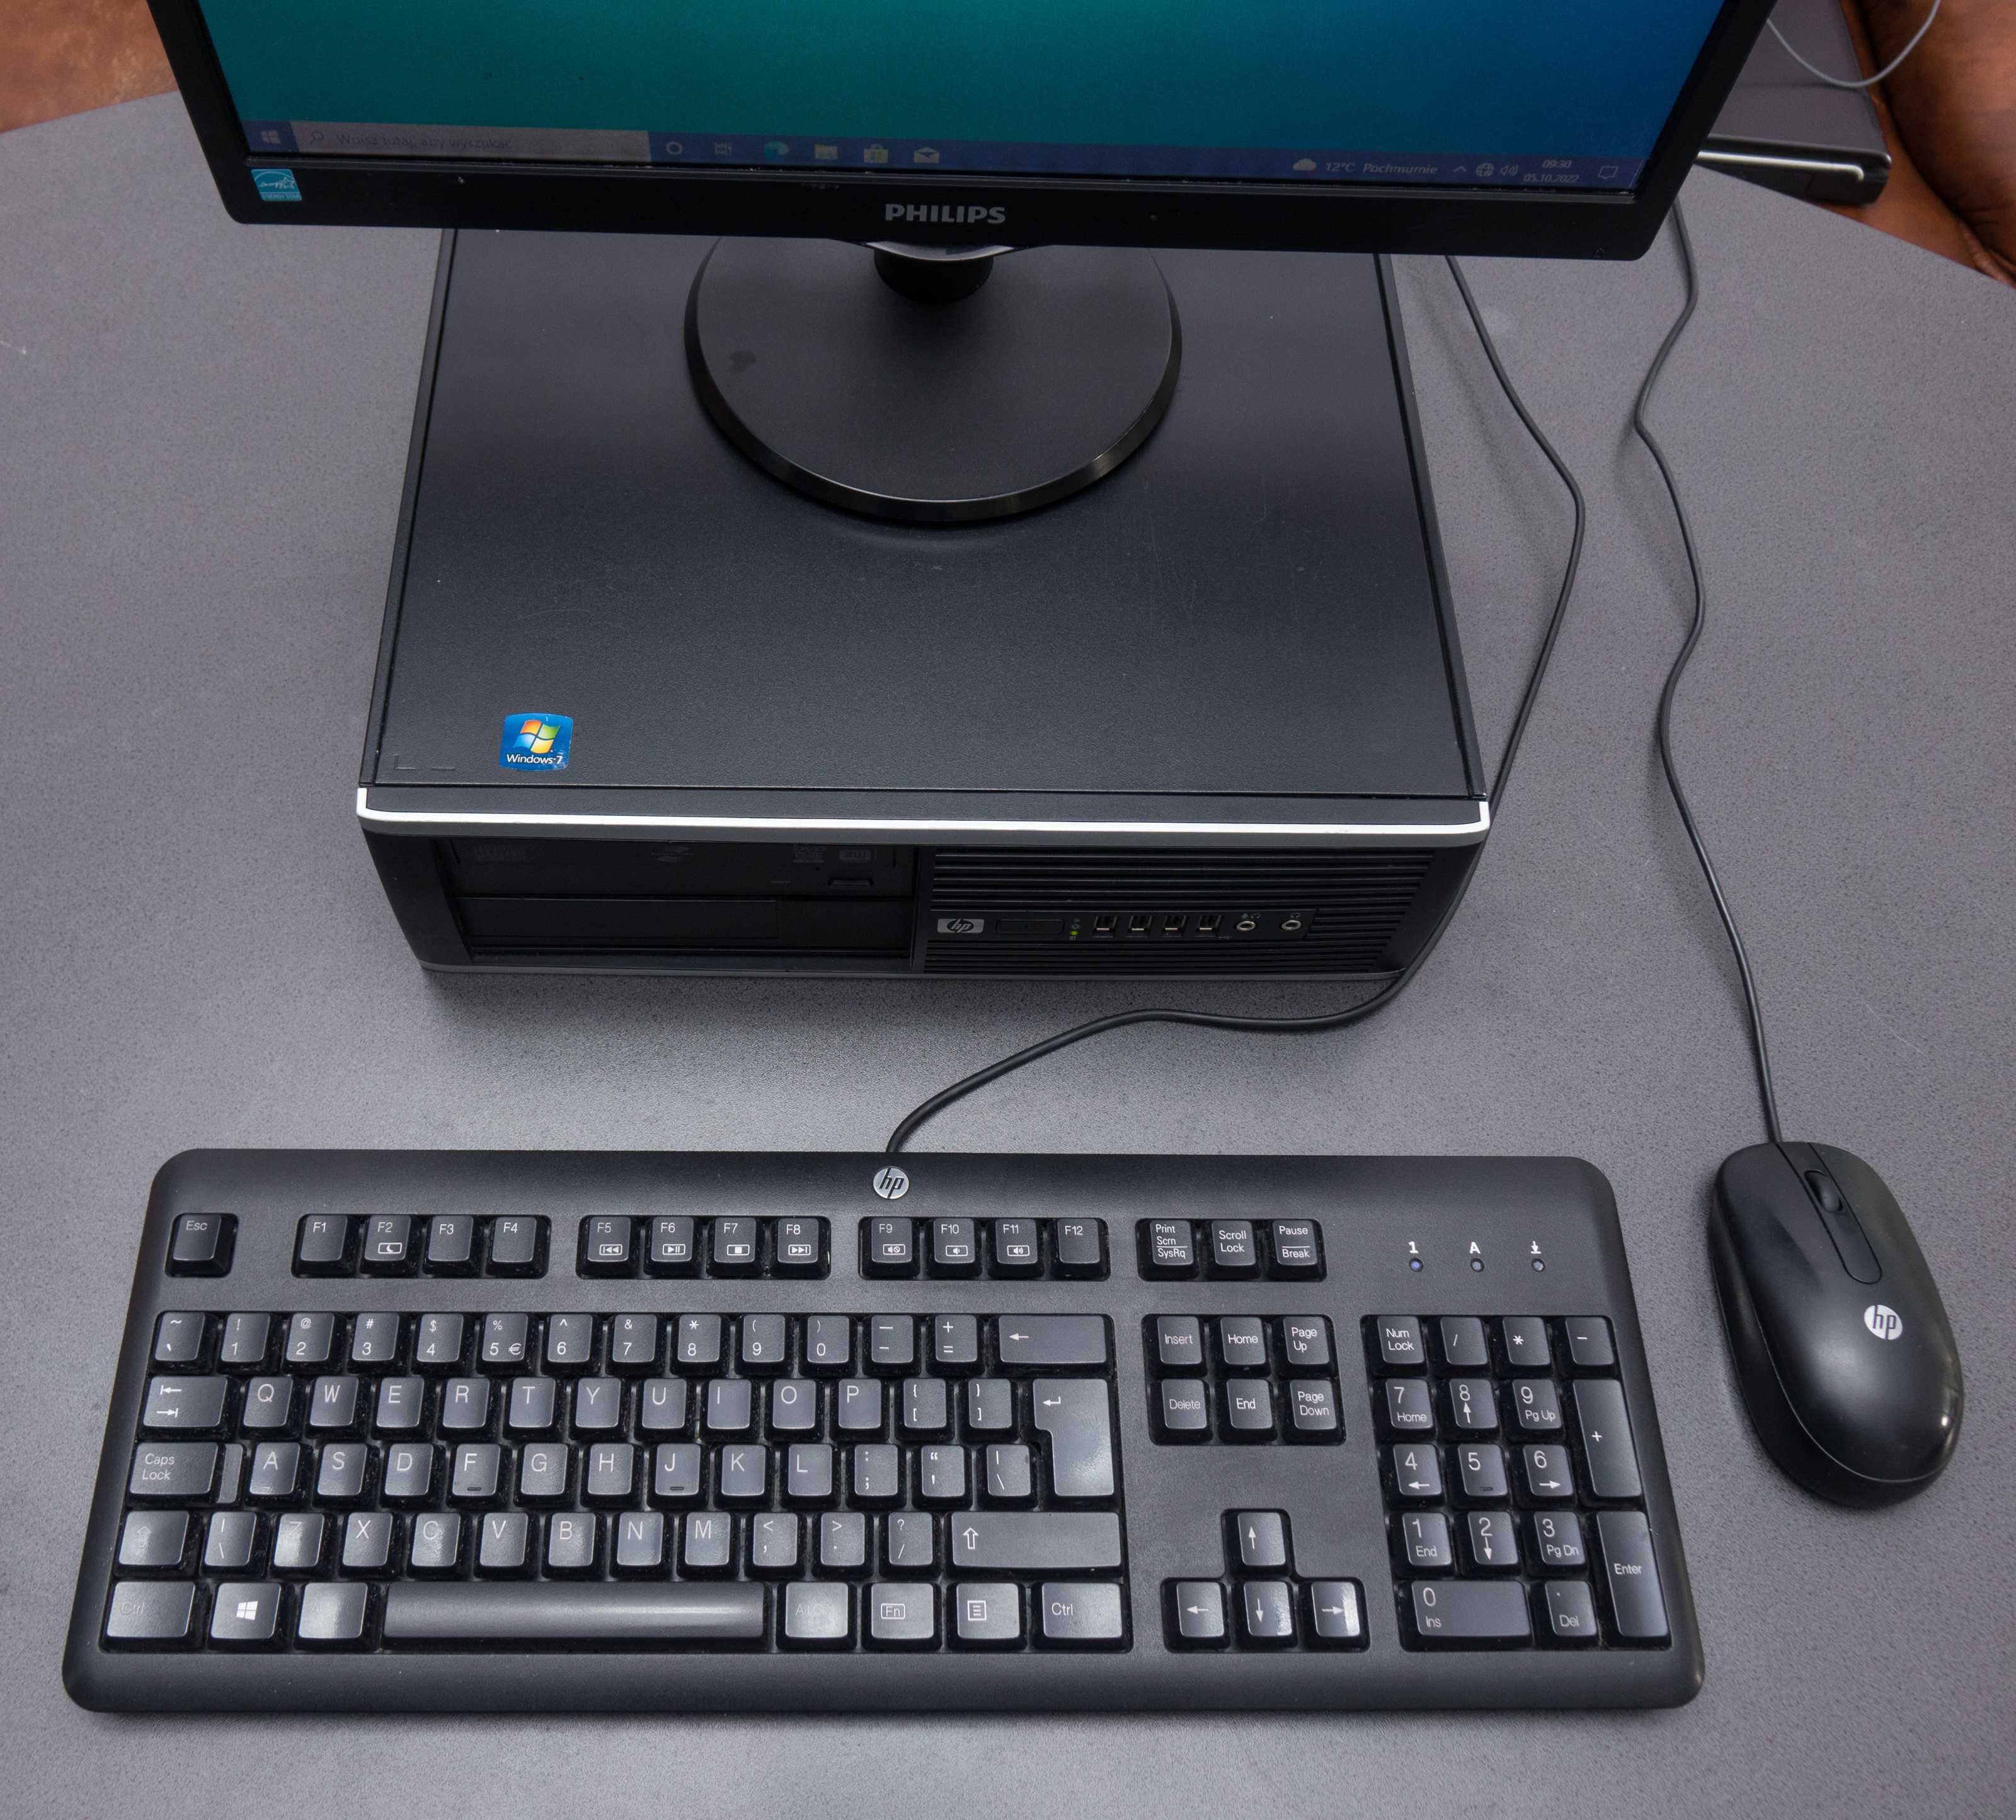 Komputer HP + monitor Philips, Win 11 Pro, zestaw do domu lub biura